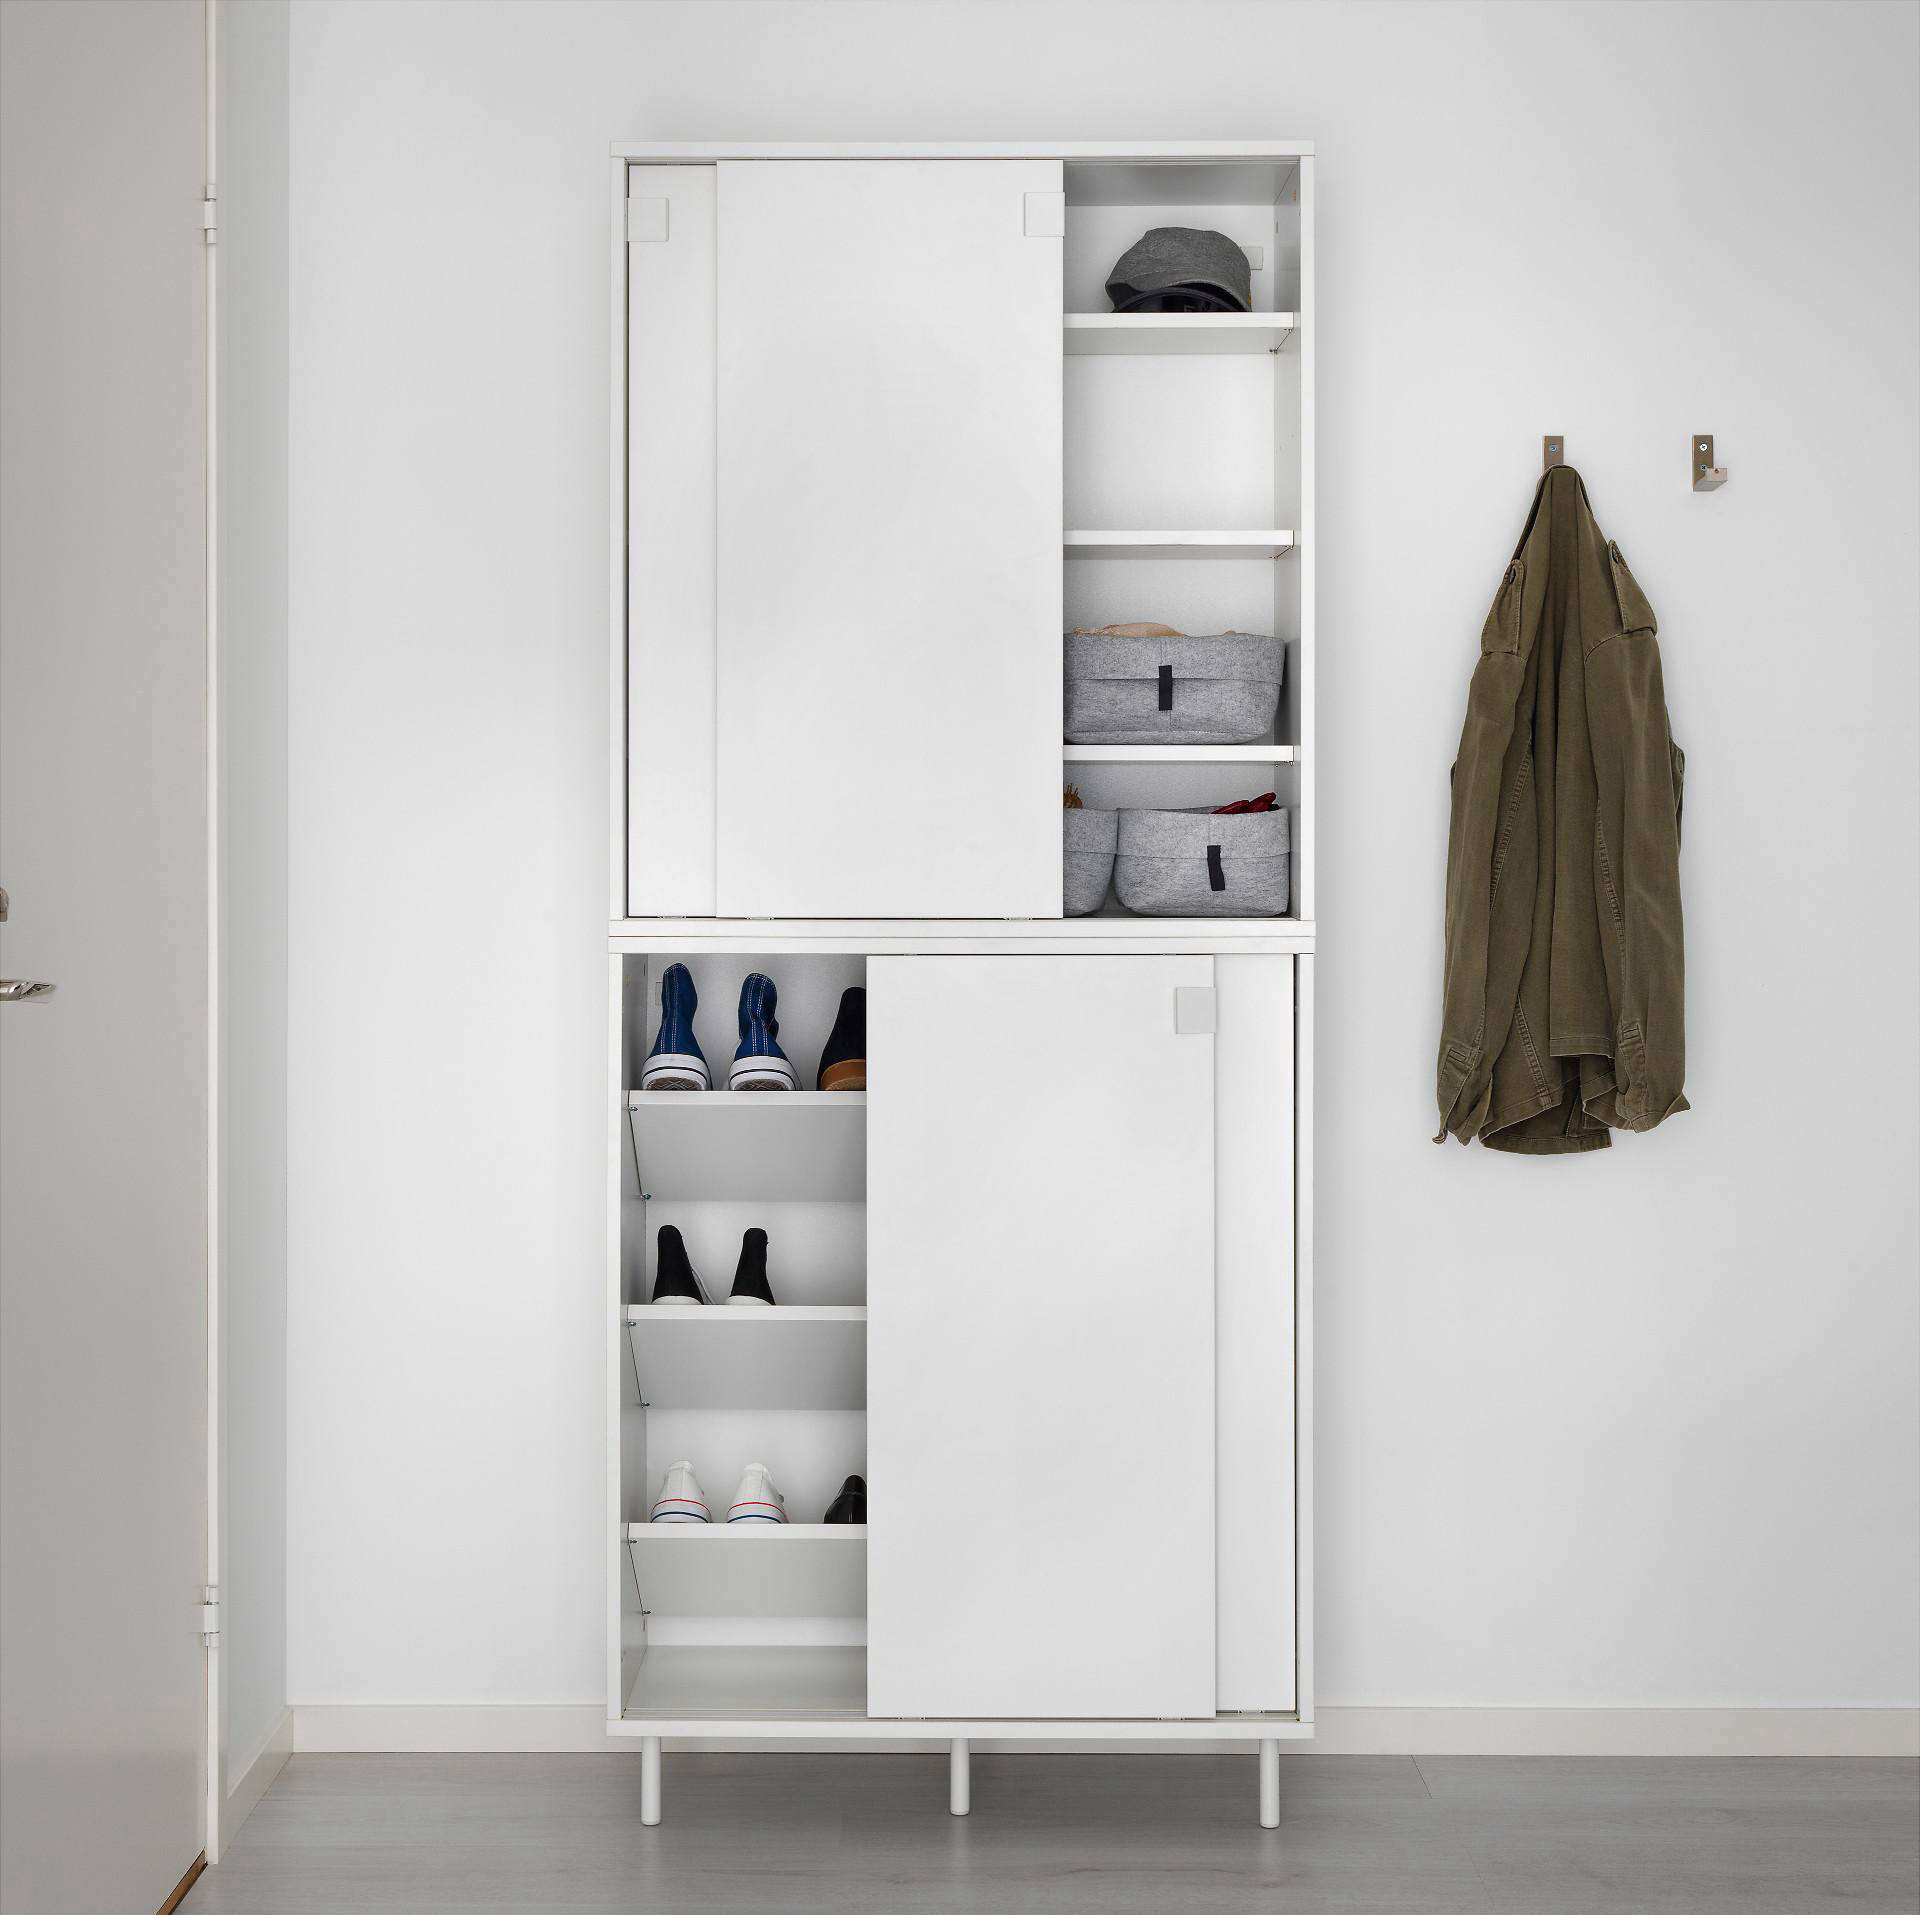 Chiếc tủ giày IKEA có thiết kế đơn giản nhưng cực kỳ tiện ích bởi giải pháp cửa trượt - lựa chọn hoàn hảo cho những không gian nhỏ.